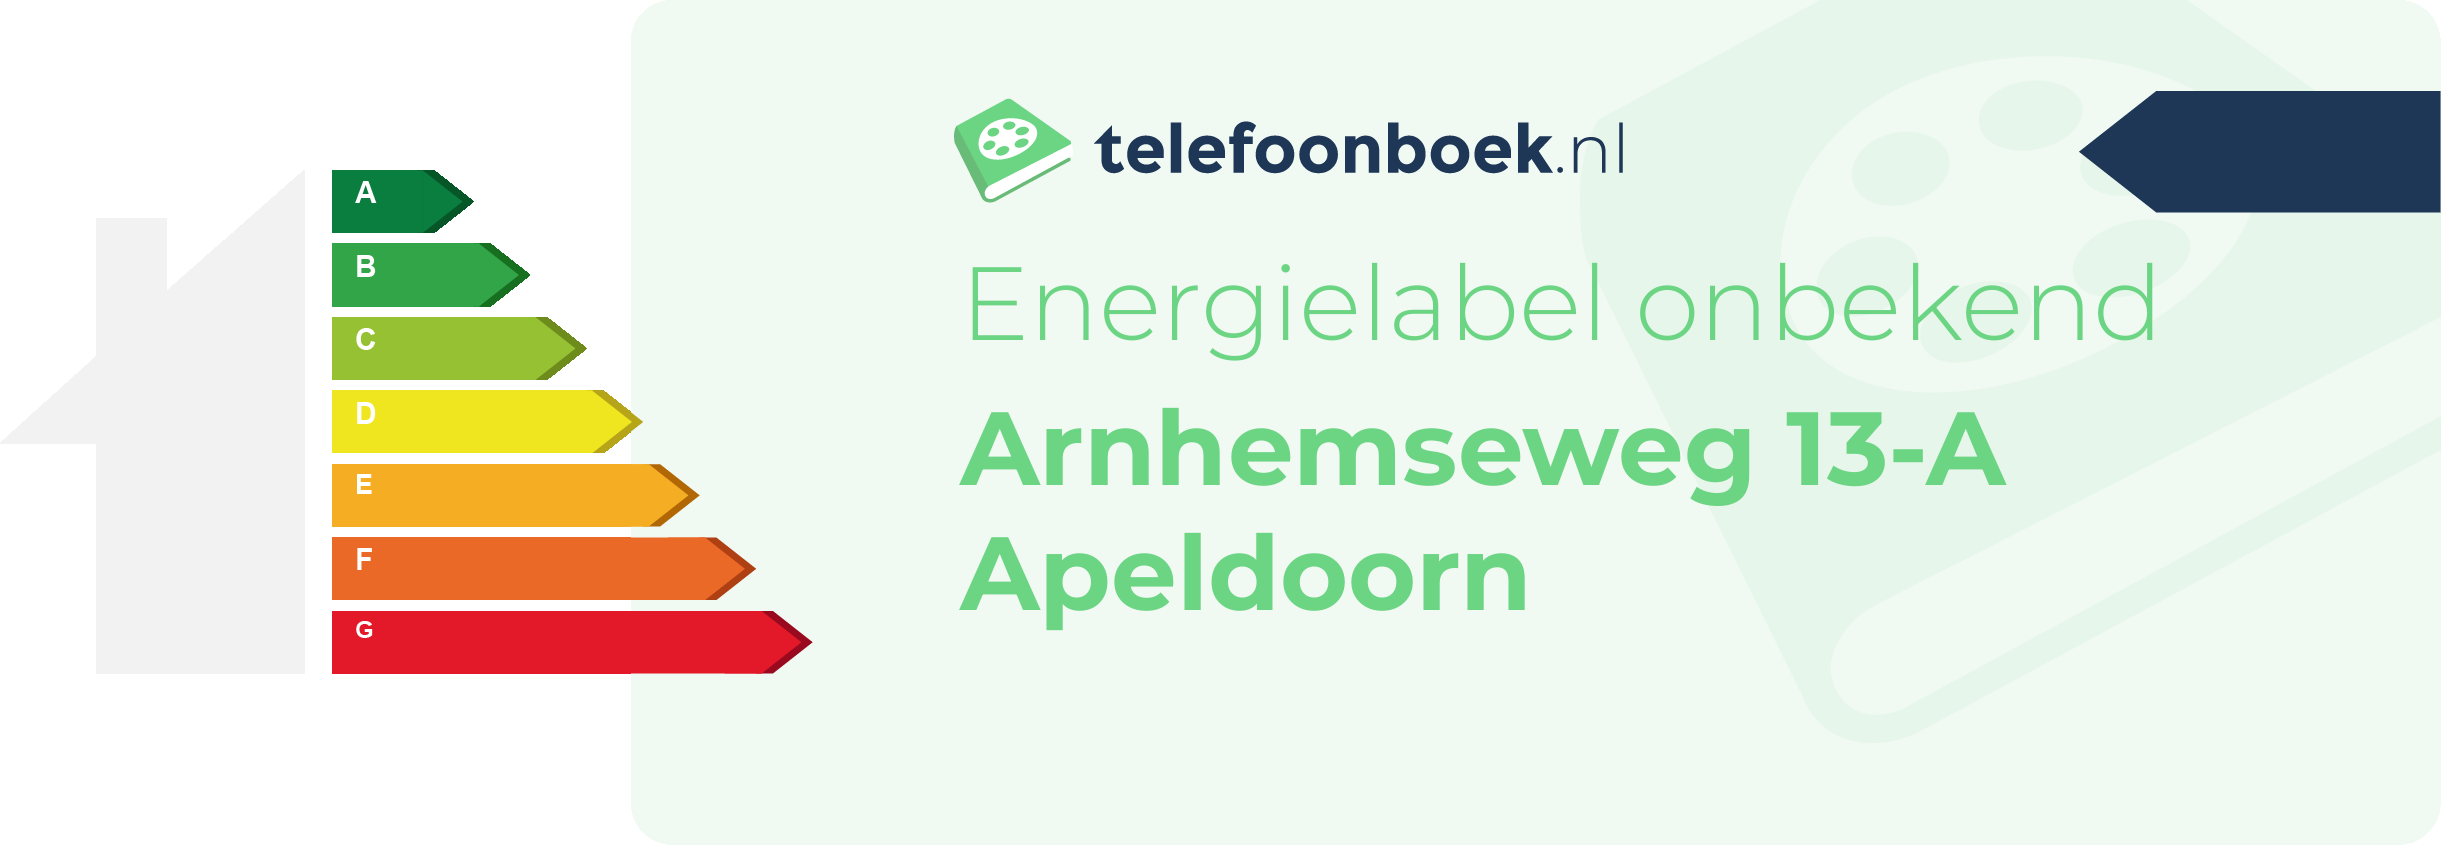 Energielabel Arnhemseweg 13-A Apeldoorn